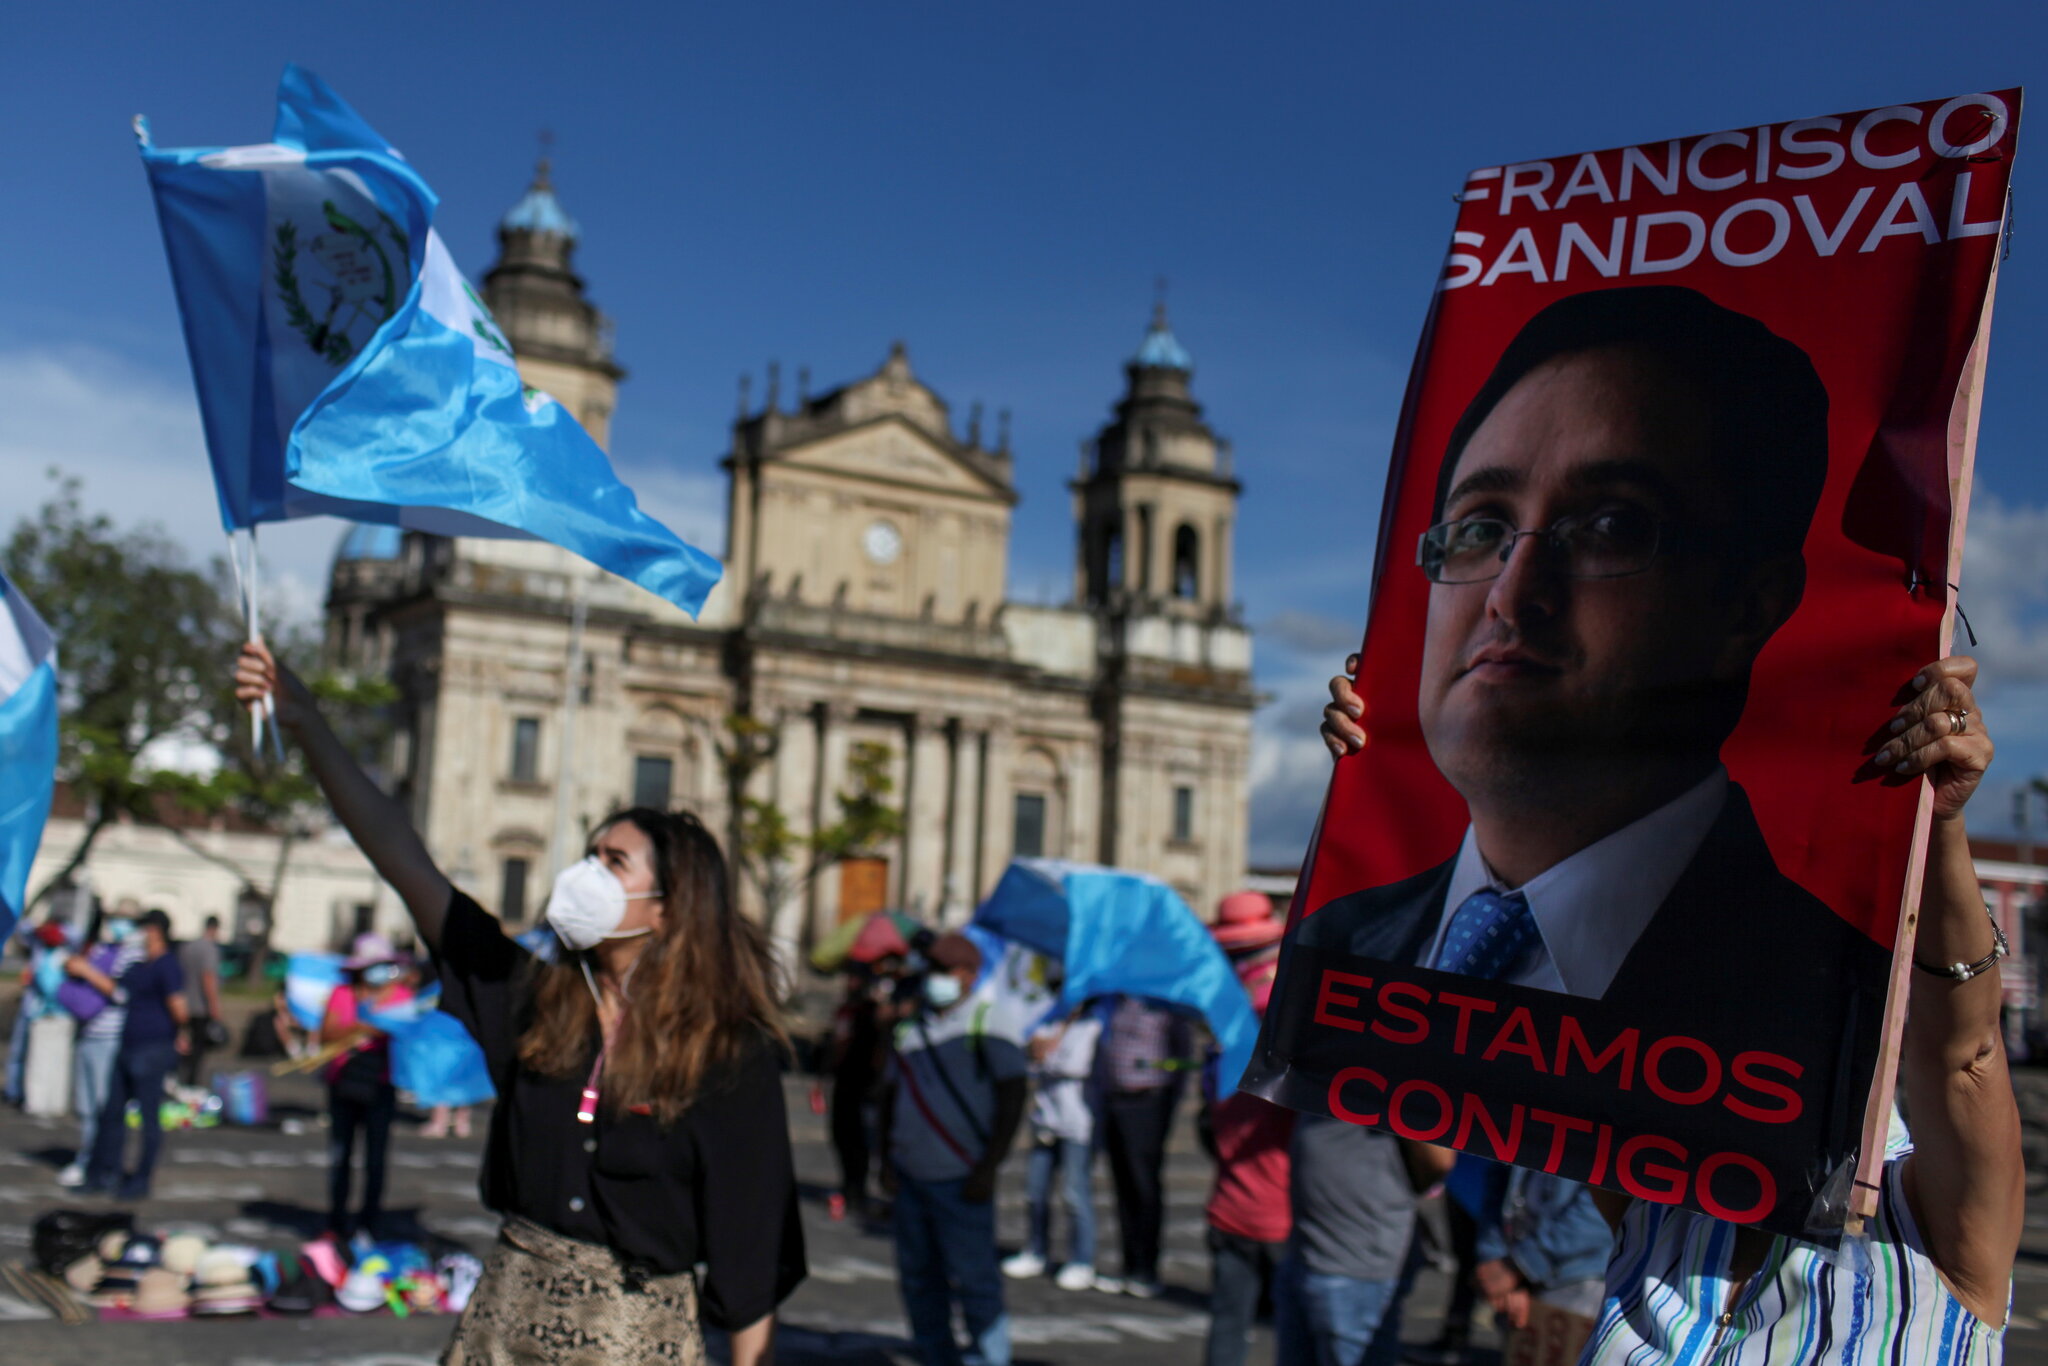 Simpatizantes del exfiscal anticorrupción Juan Francisco Sandoval exigieron la renuncia del presidente y de la fiscala general en Guatemala el mes pasado. (Sandra Sebastian/Reuters)
